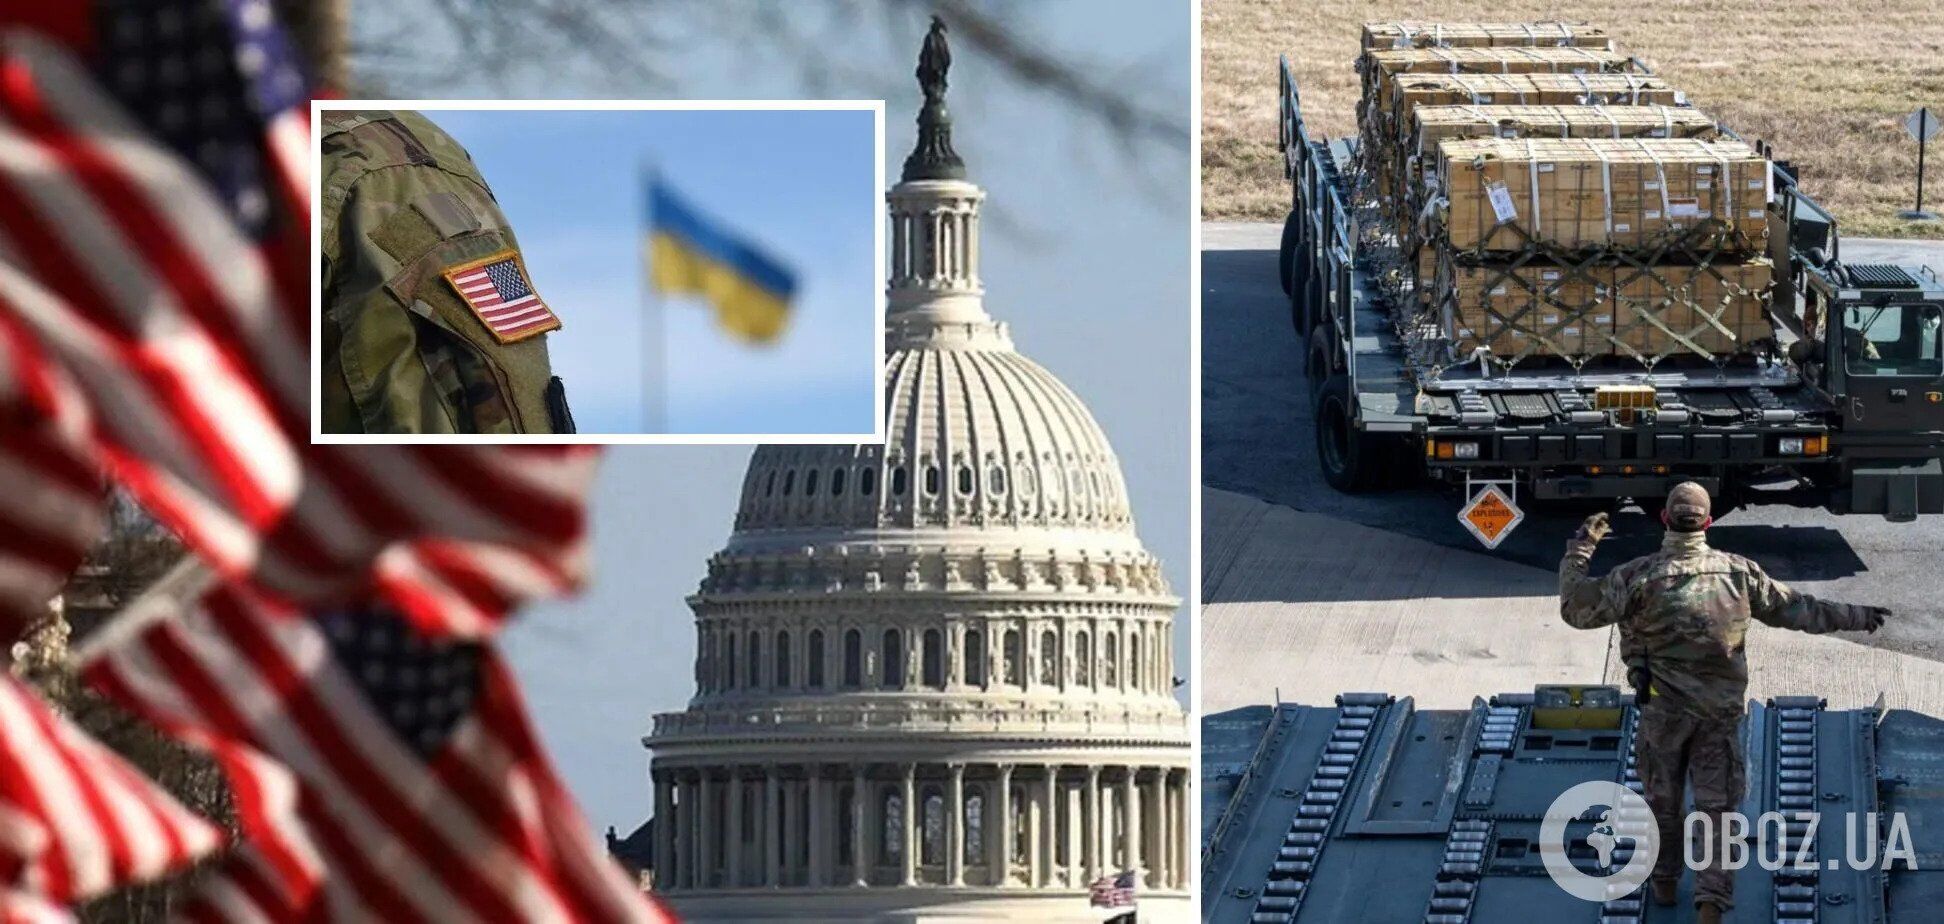 "Україна – не Афганістан": в ISW пояснили, чому США вигідна підтримка Києва під час війни 